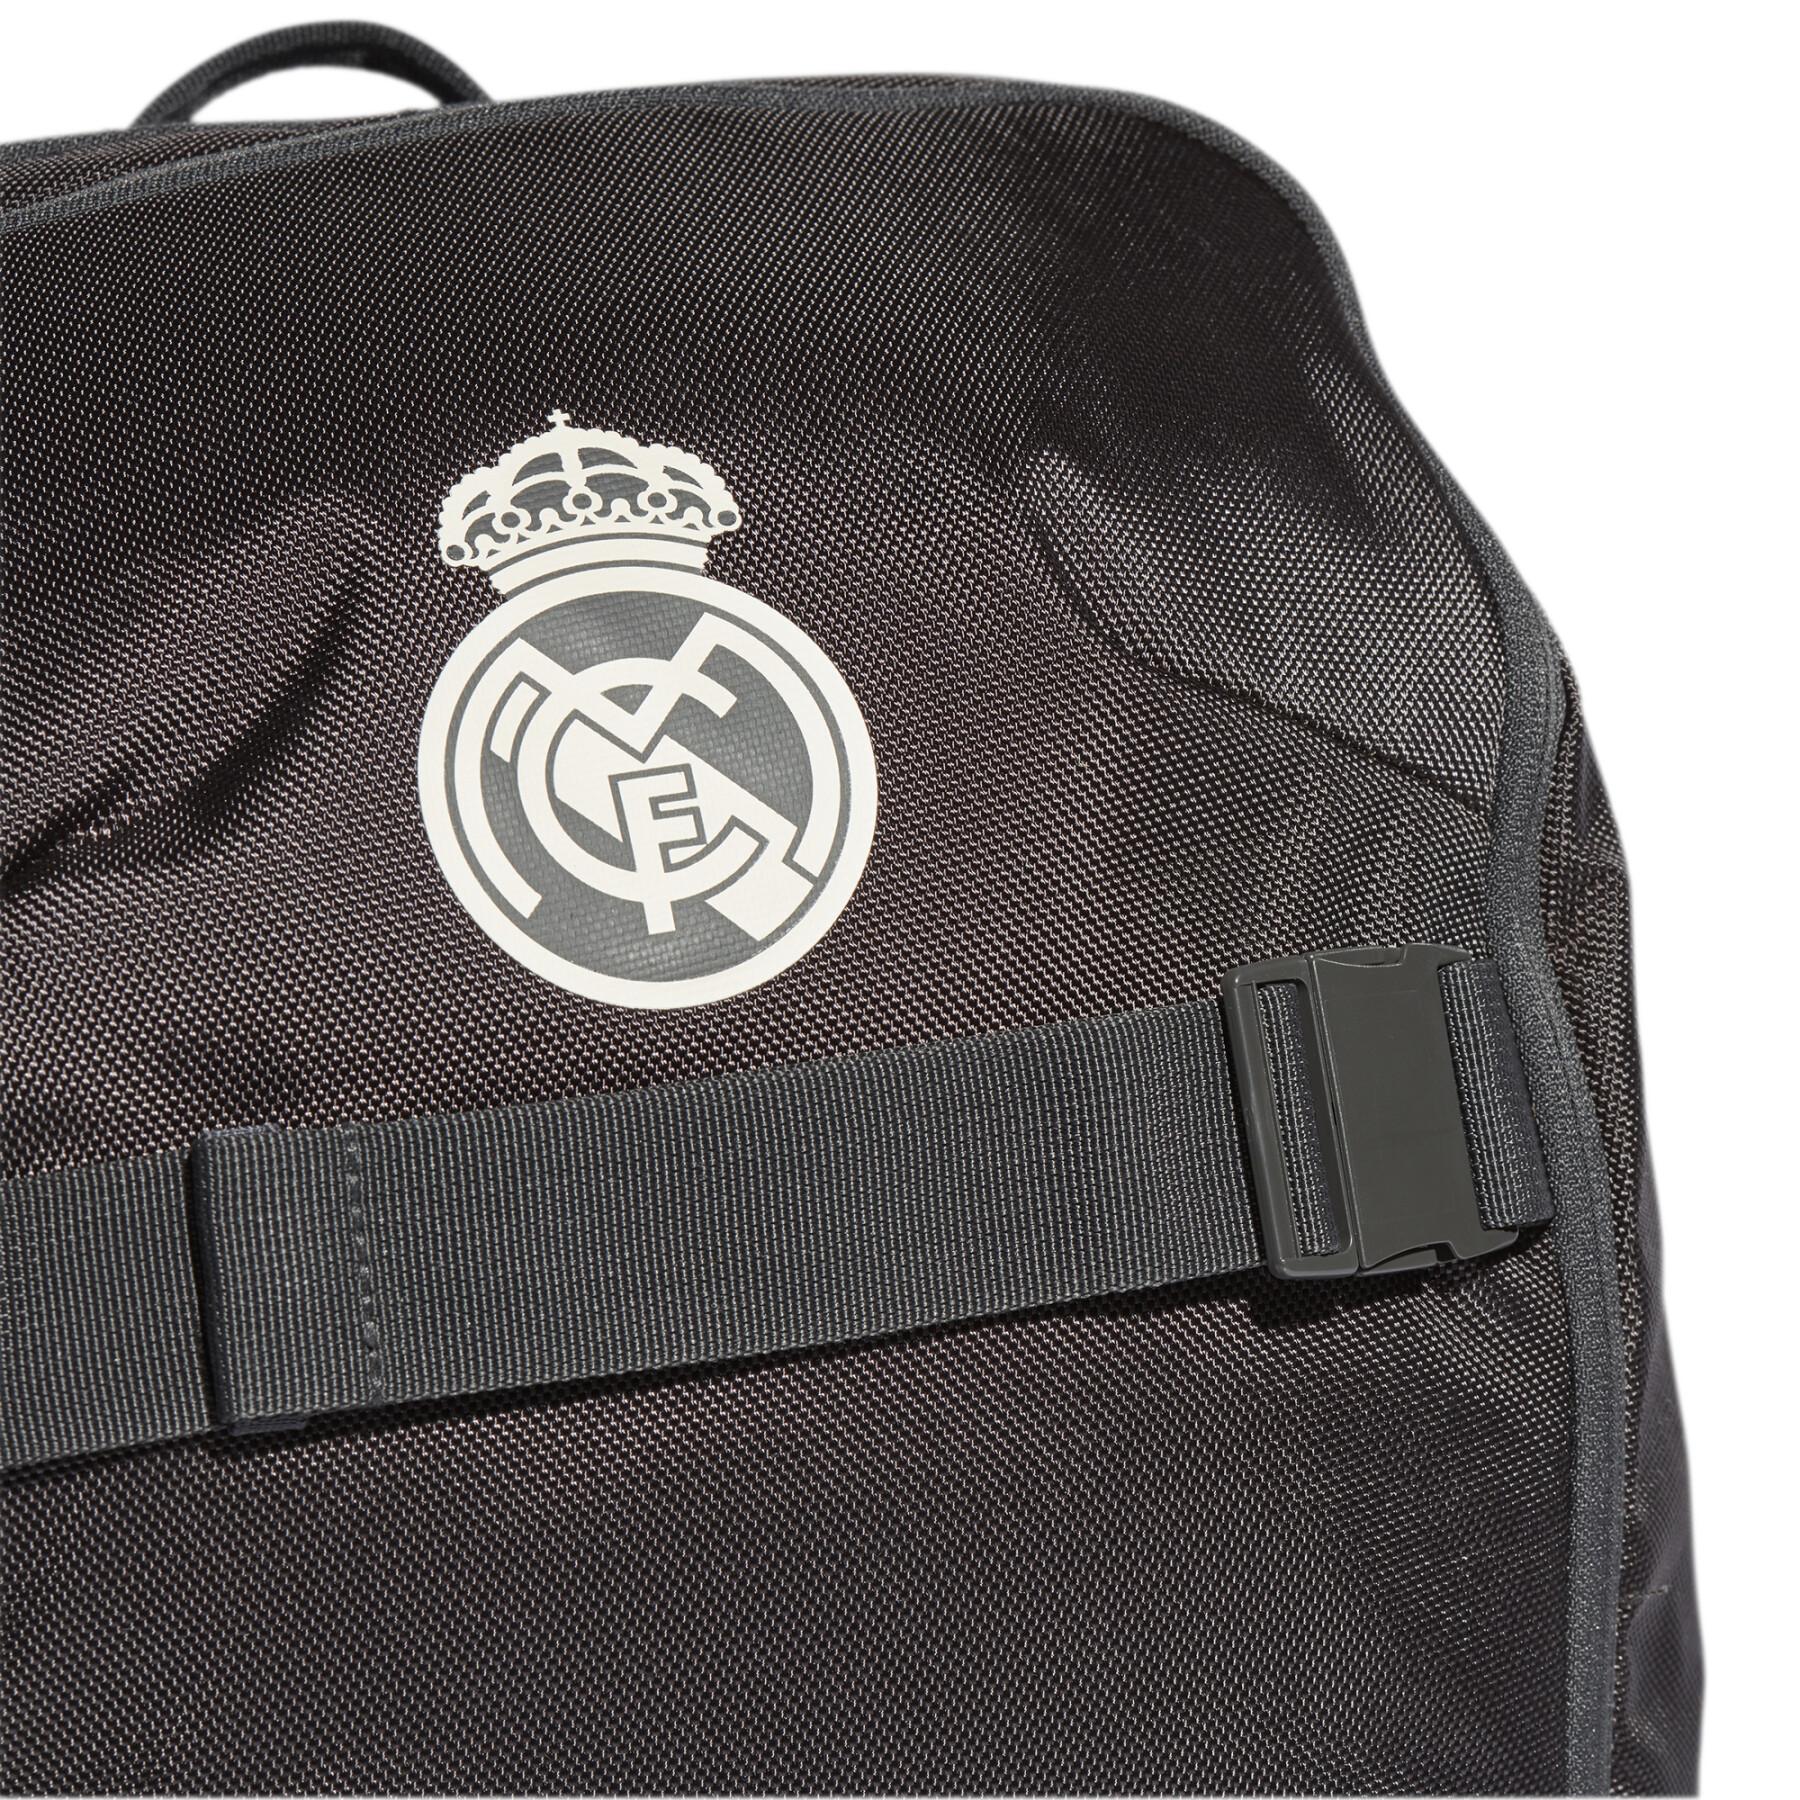 Plecak Real Madrid ID